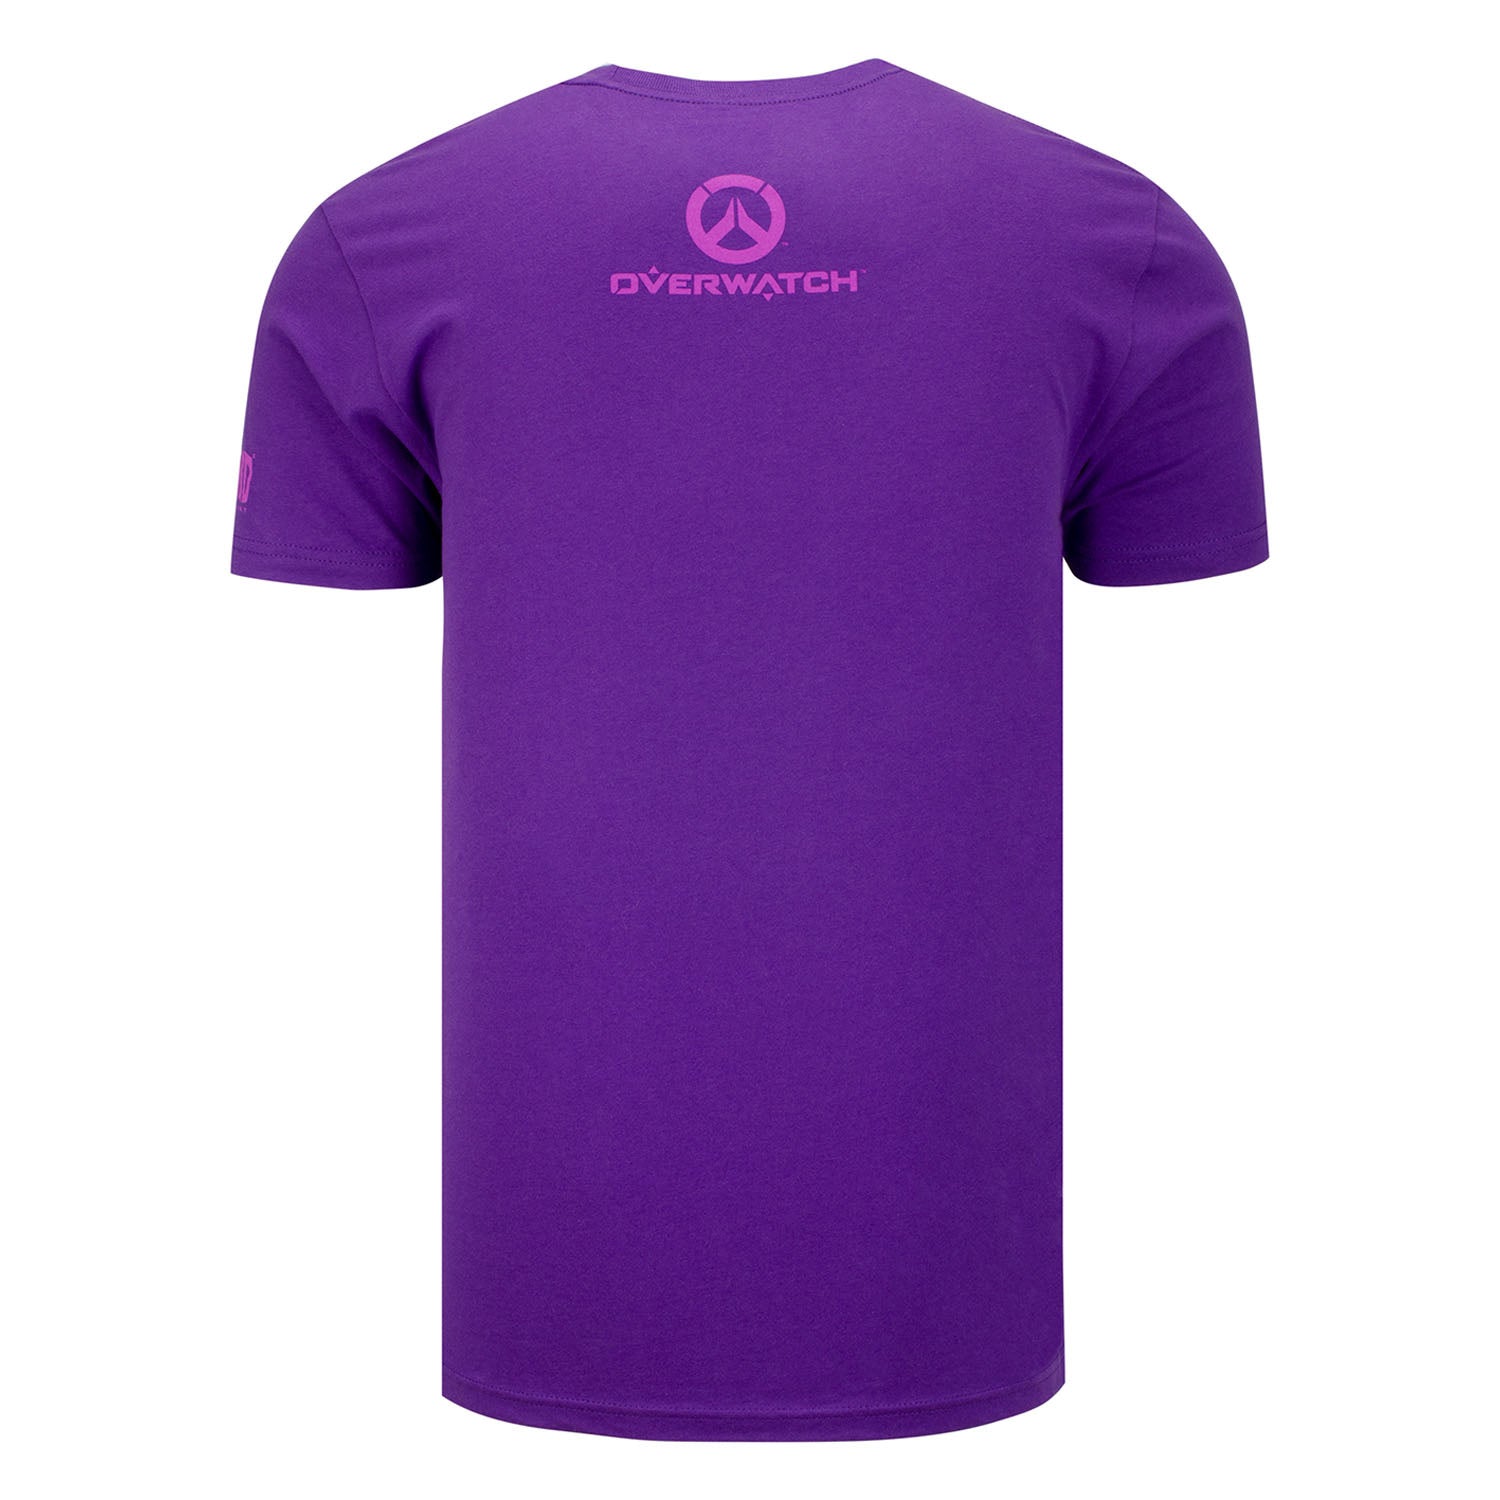 Overwatch Sombra Hero Purple T-Shirt - Back View